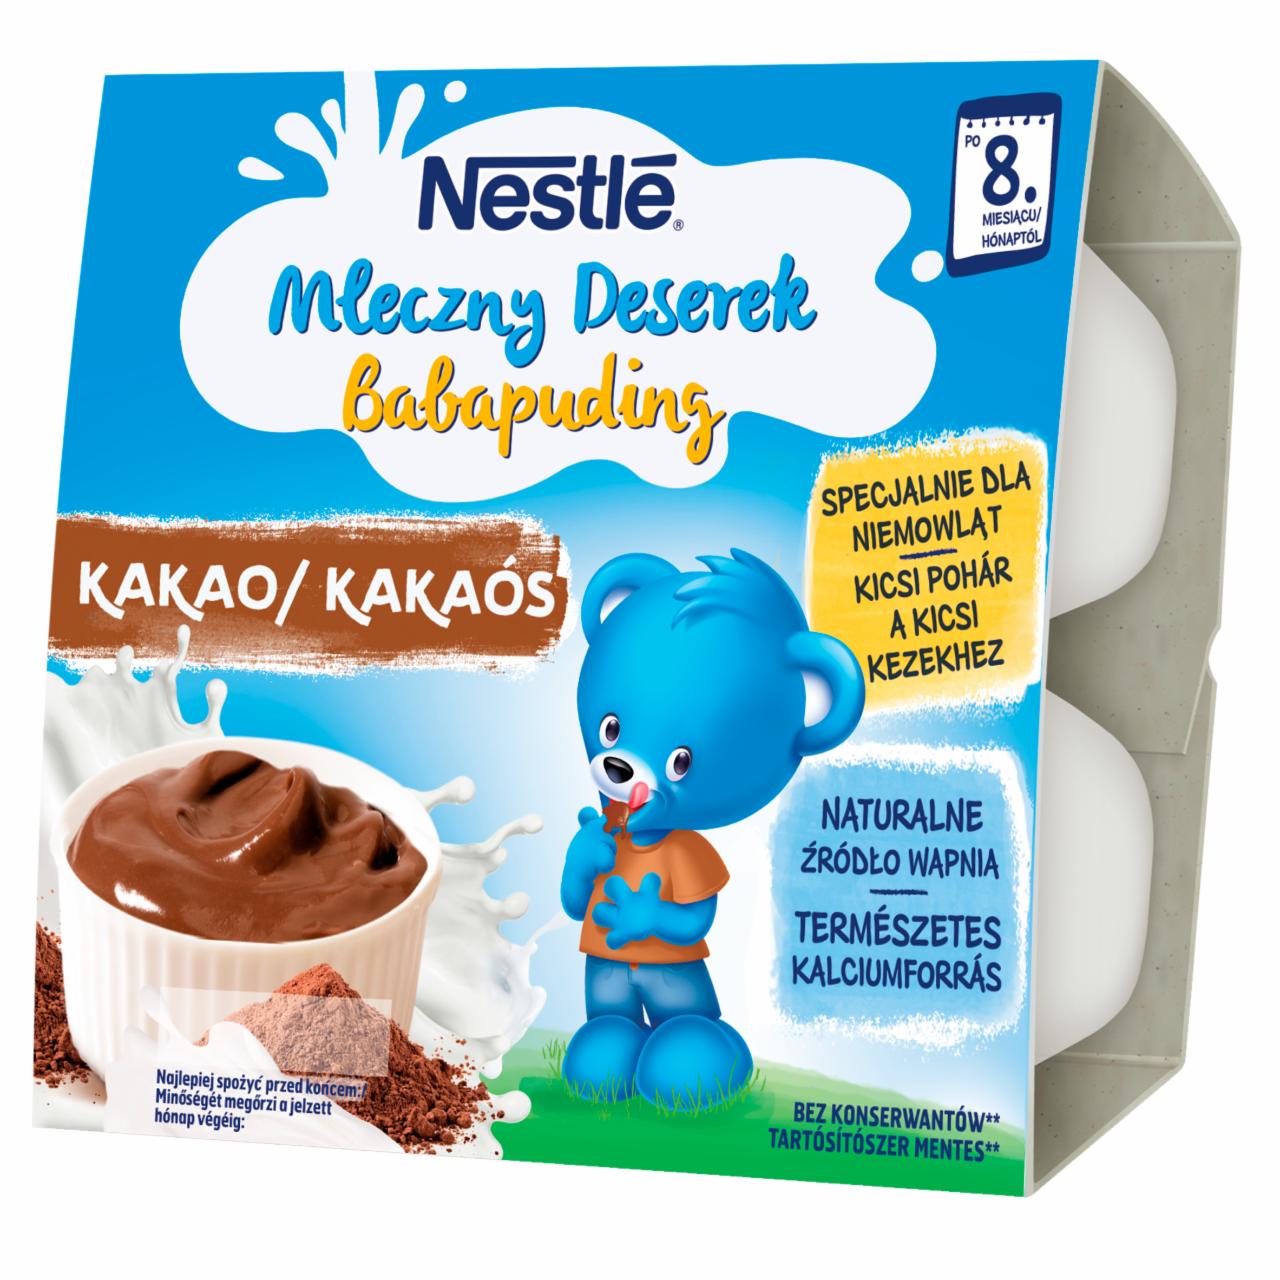 Zdjęcia - Nestlé Mleczny Deserek kakao dla niemowląt po 8. miesiącu 400 g (4 x 100 g)